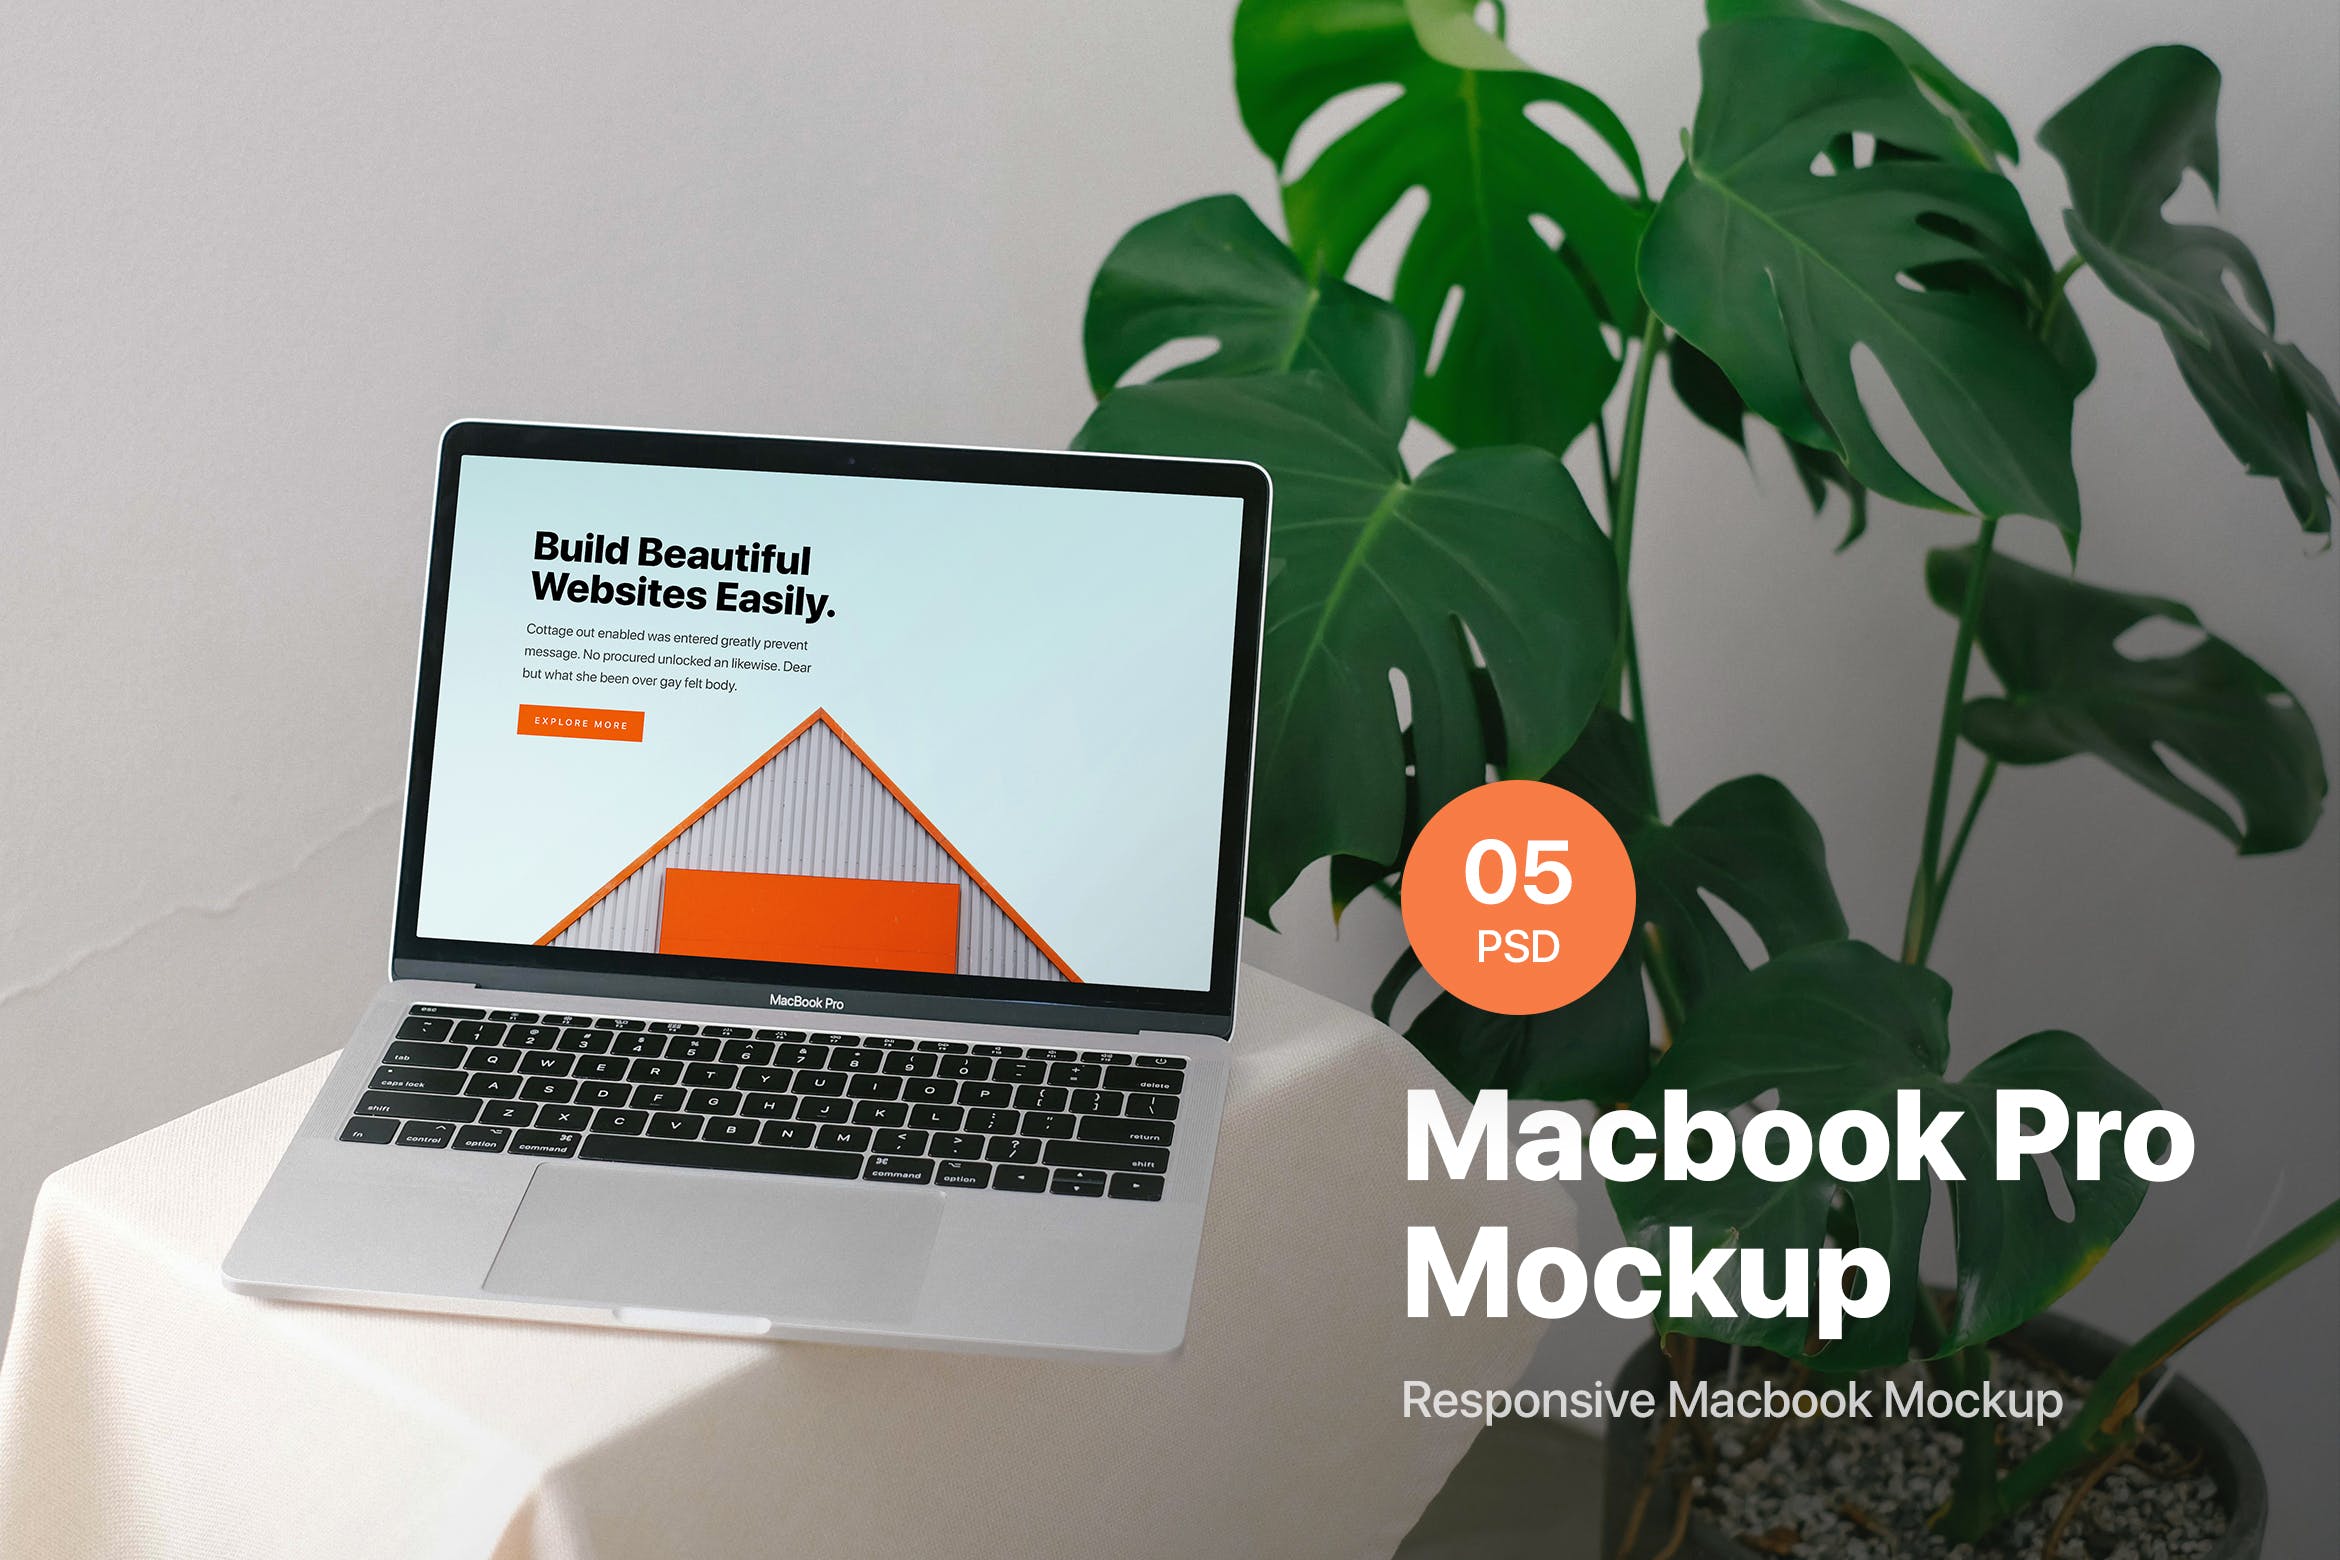 响应式网站设计效果图MacBook Pro电脑样机 Macbook Pro Responsive Mockup插图